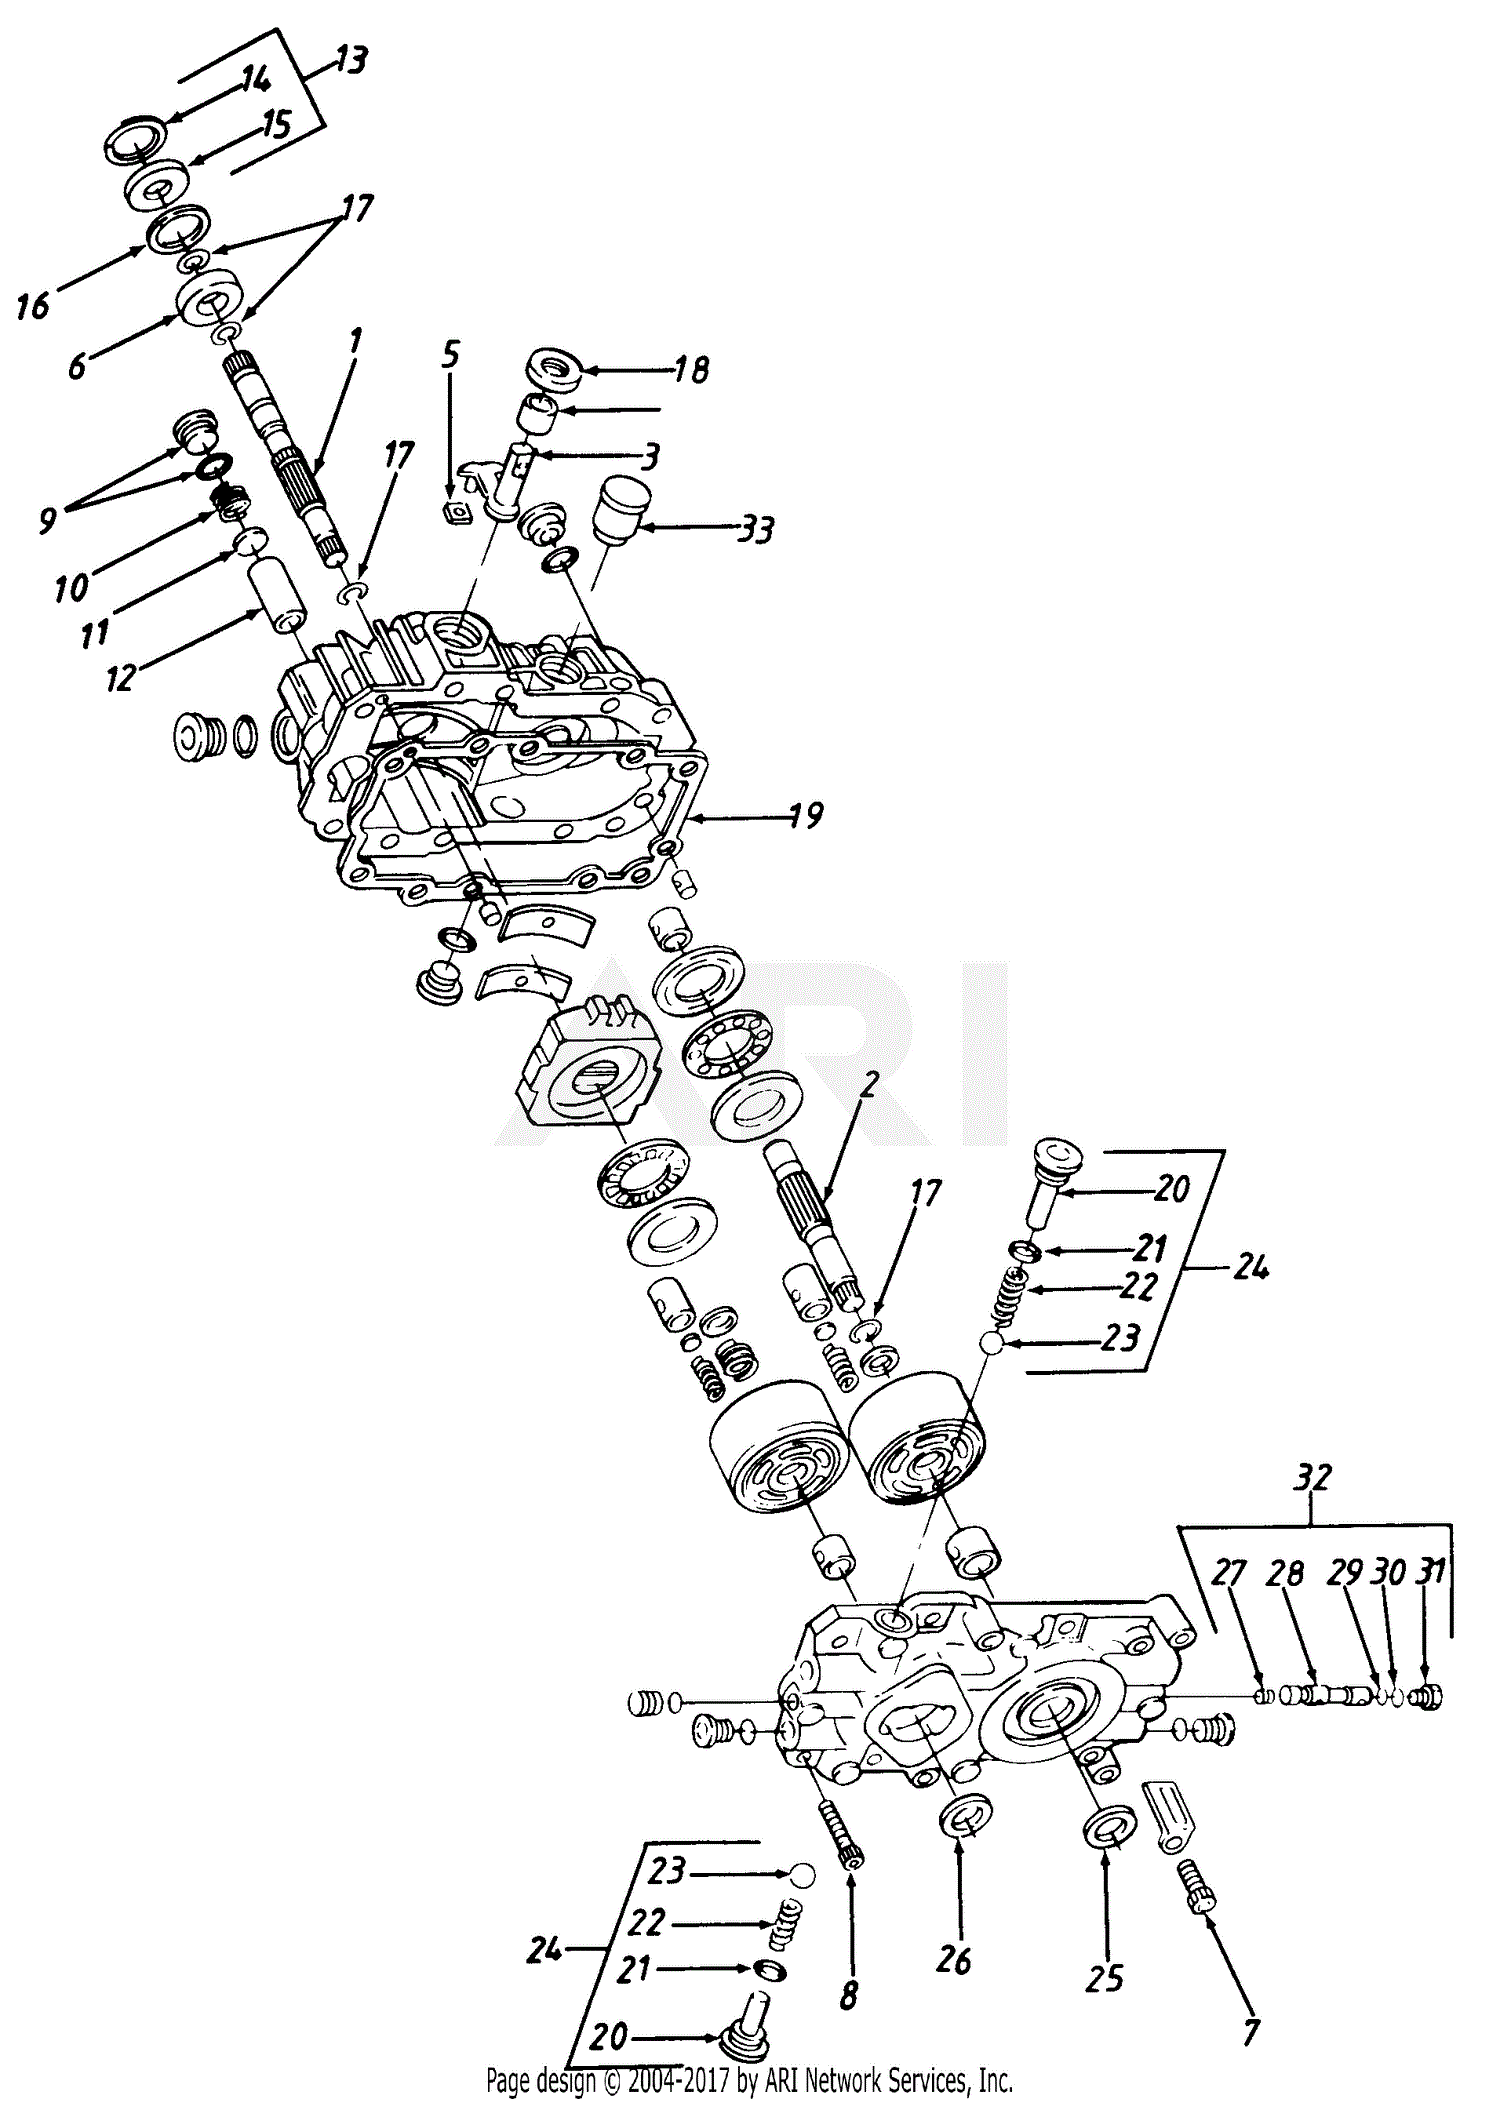 33 Cub Cadet Hydrostatic Transmission Diagram